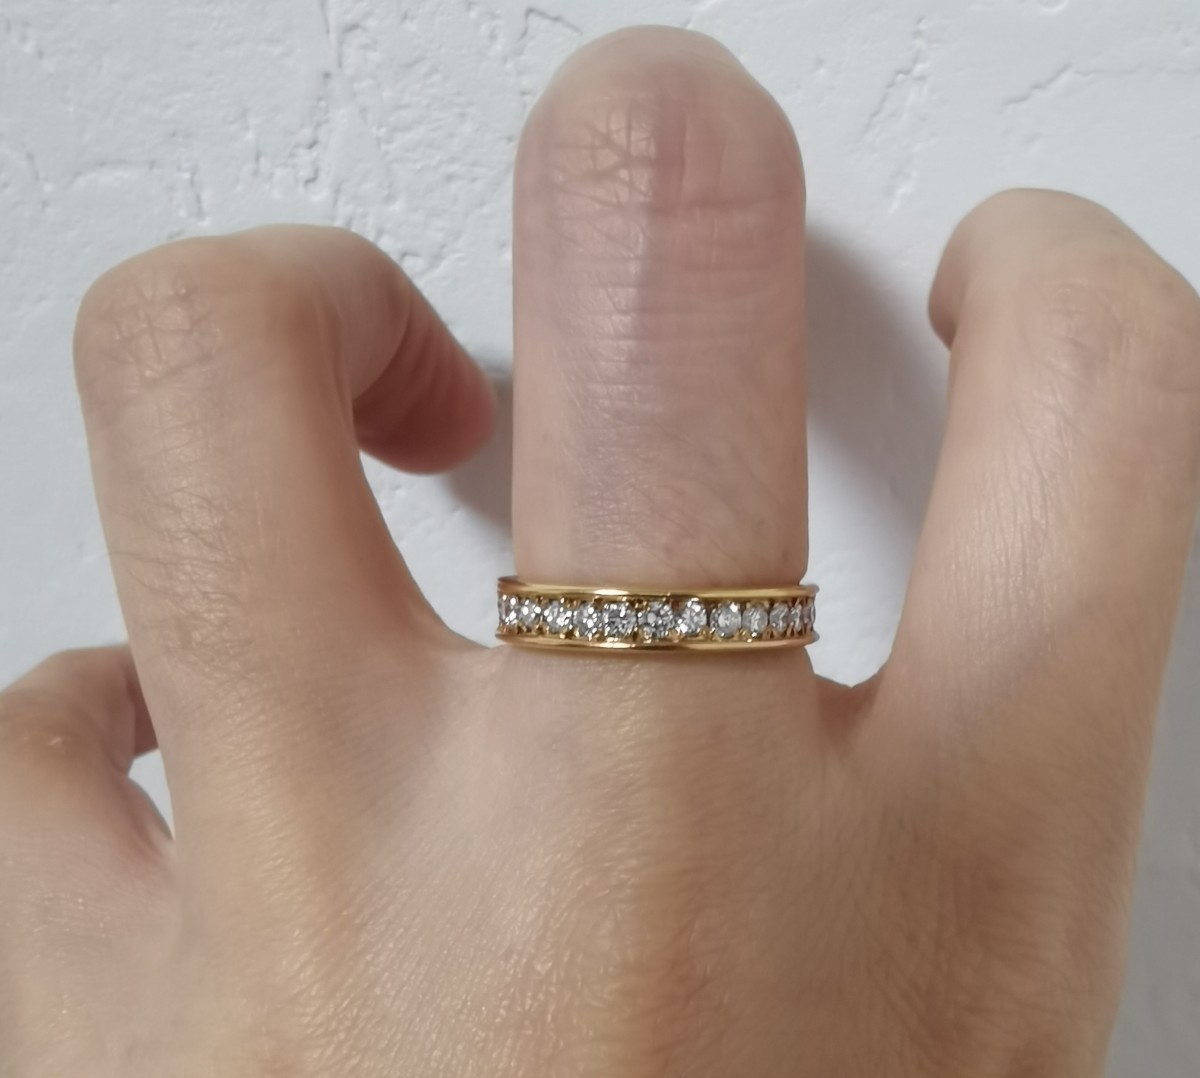 78200円 日本メーカー新品 ペアリング ダイヤモンドエタニティリング ダイヤモンドリング プラチナリング 2本セット 結婚指輪 指輪 大きいサイズ対応 送料無料 人気